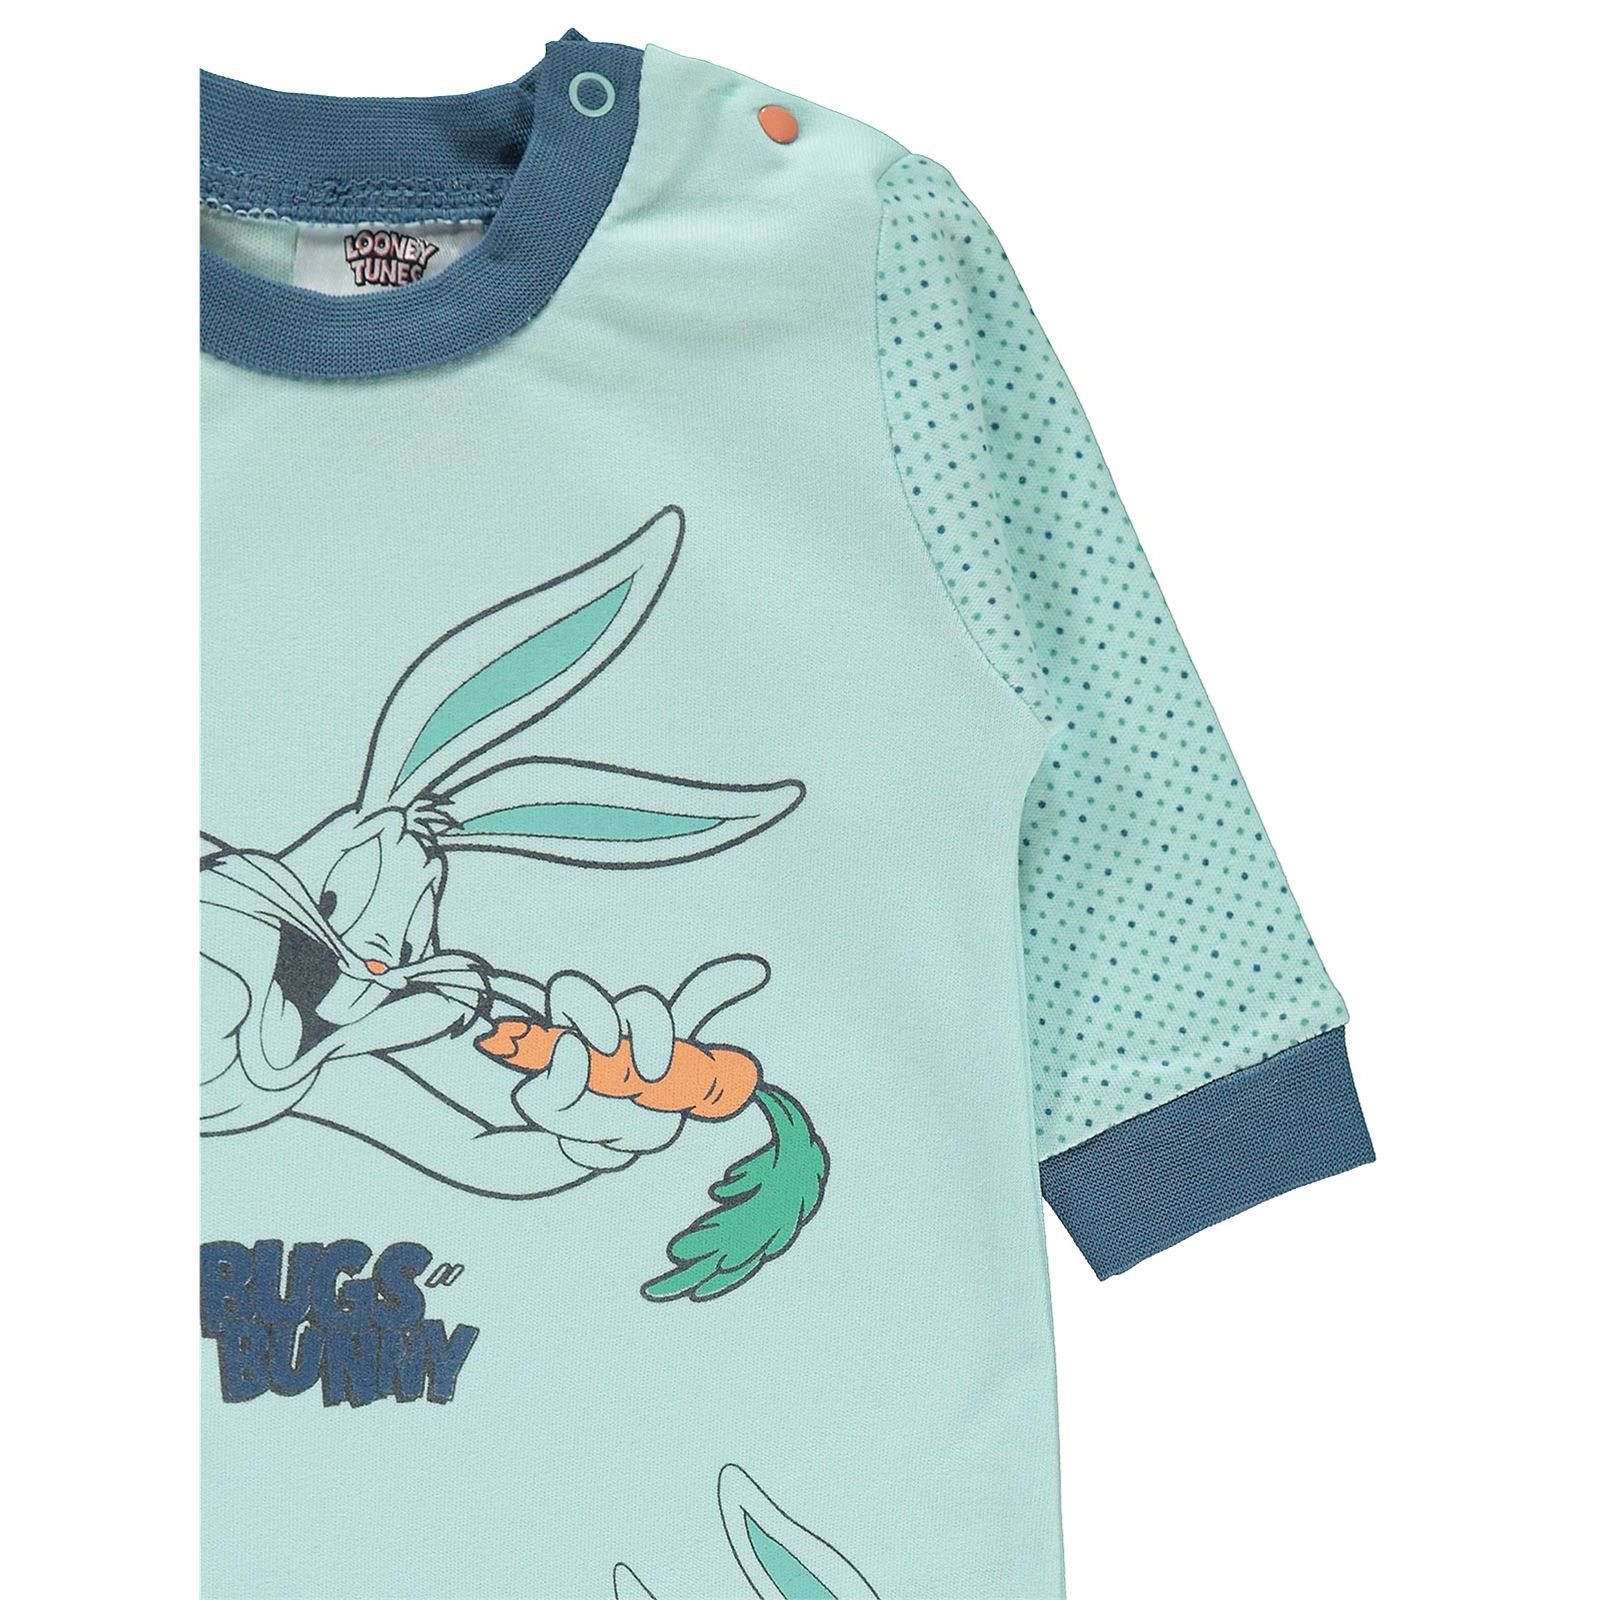 Bugs Bunny Kız Bebek Patikli Tulum 0-6 Ay Mint Yeşili